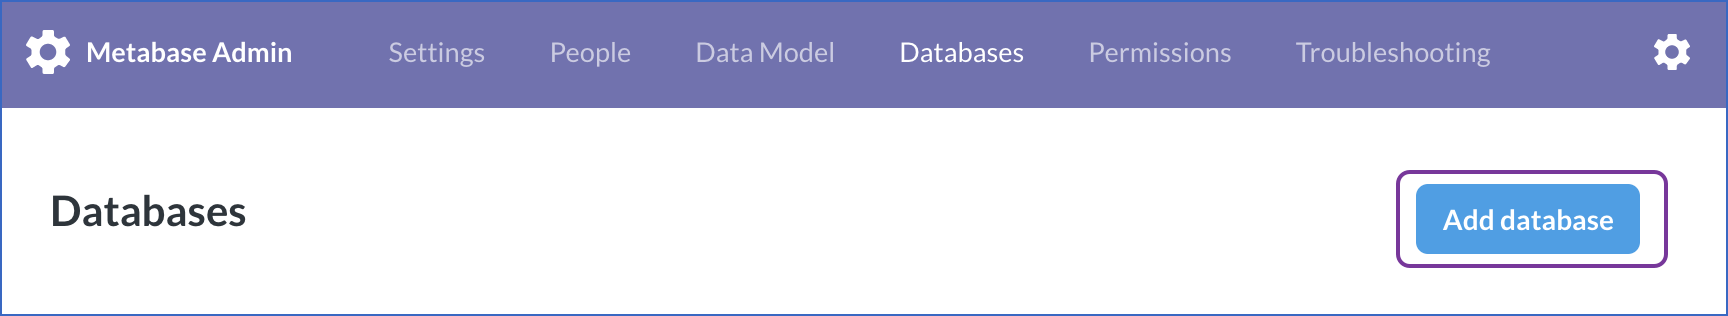 Add Database option